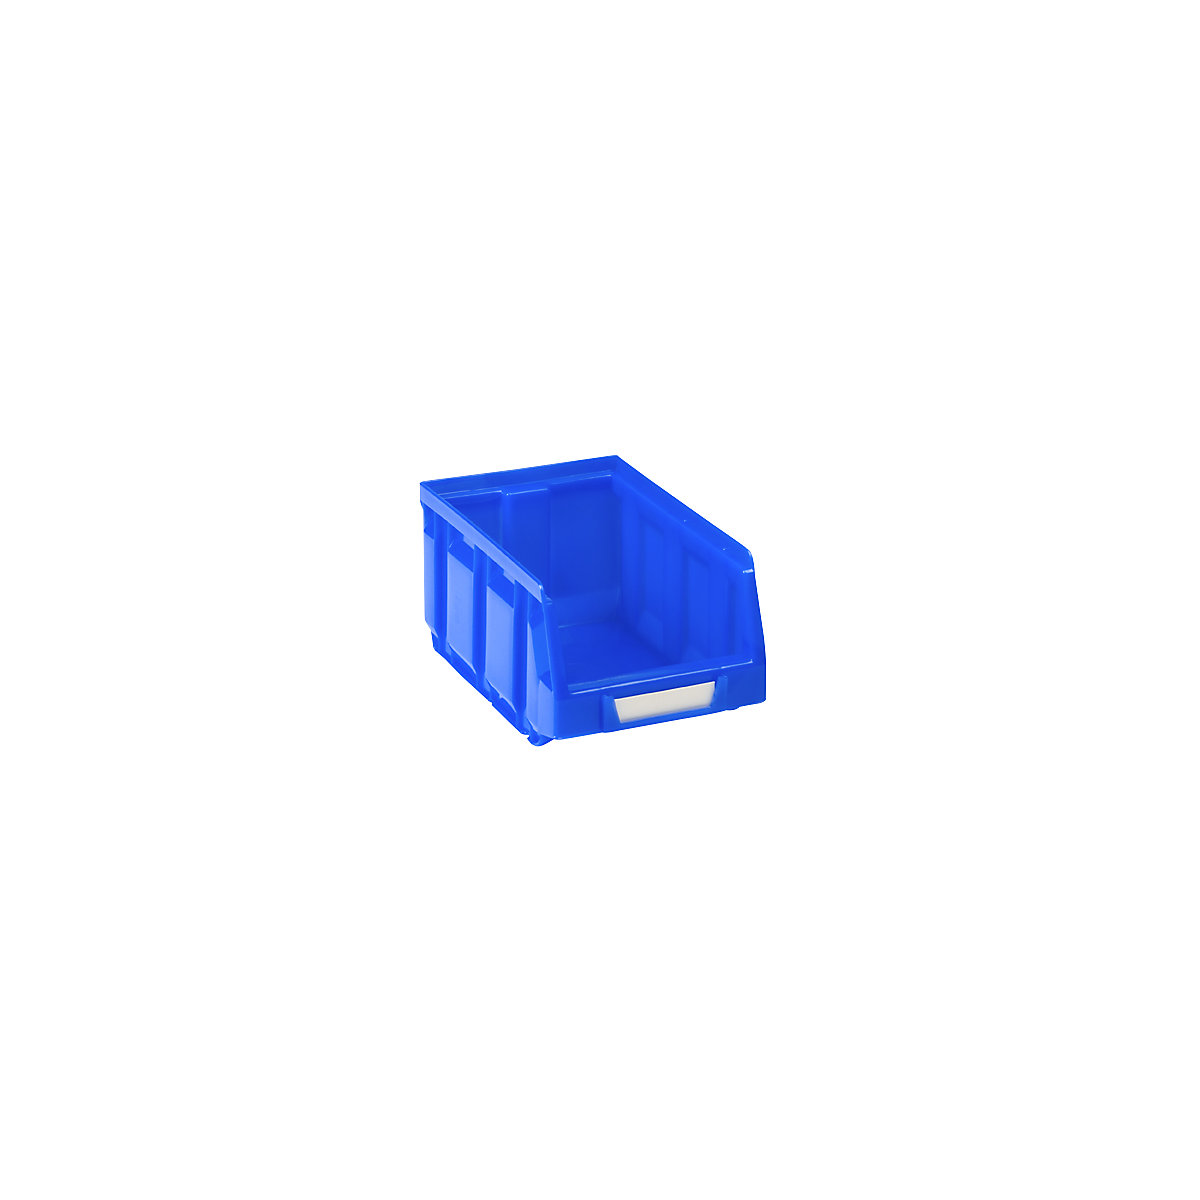 Otvorena skladišna kutija od polietilena, DxŠxV 167 x 105 x 82 mm, u plavoj boji, pak. 48 kom.-7